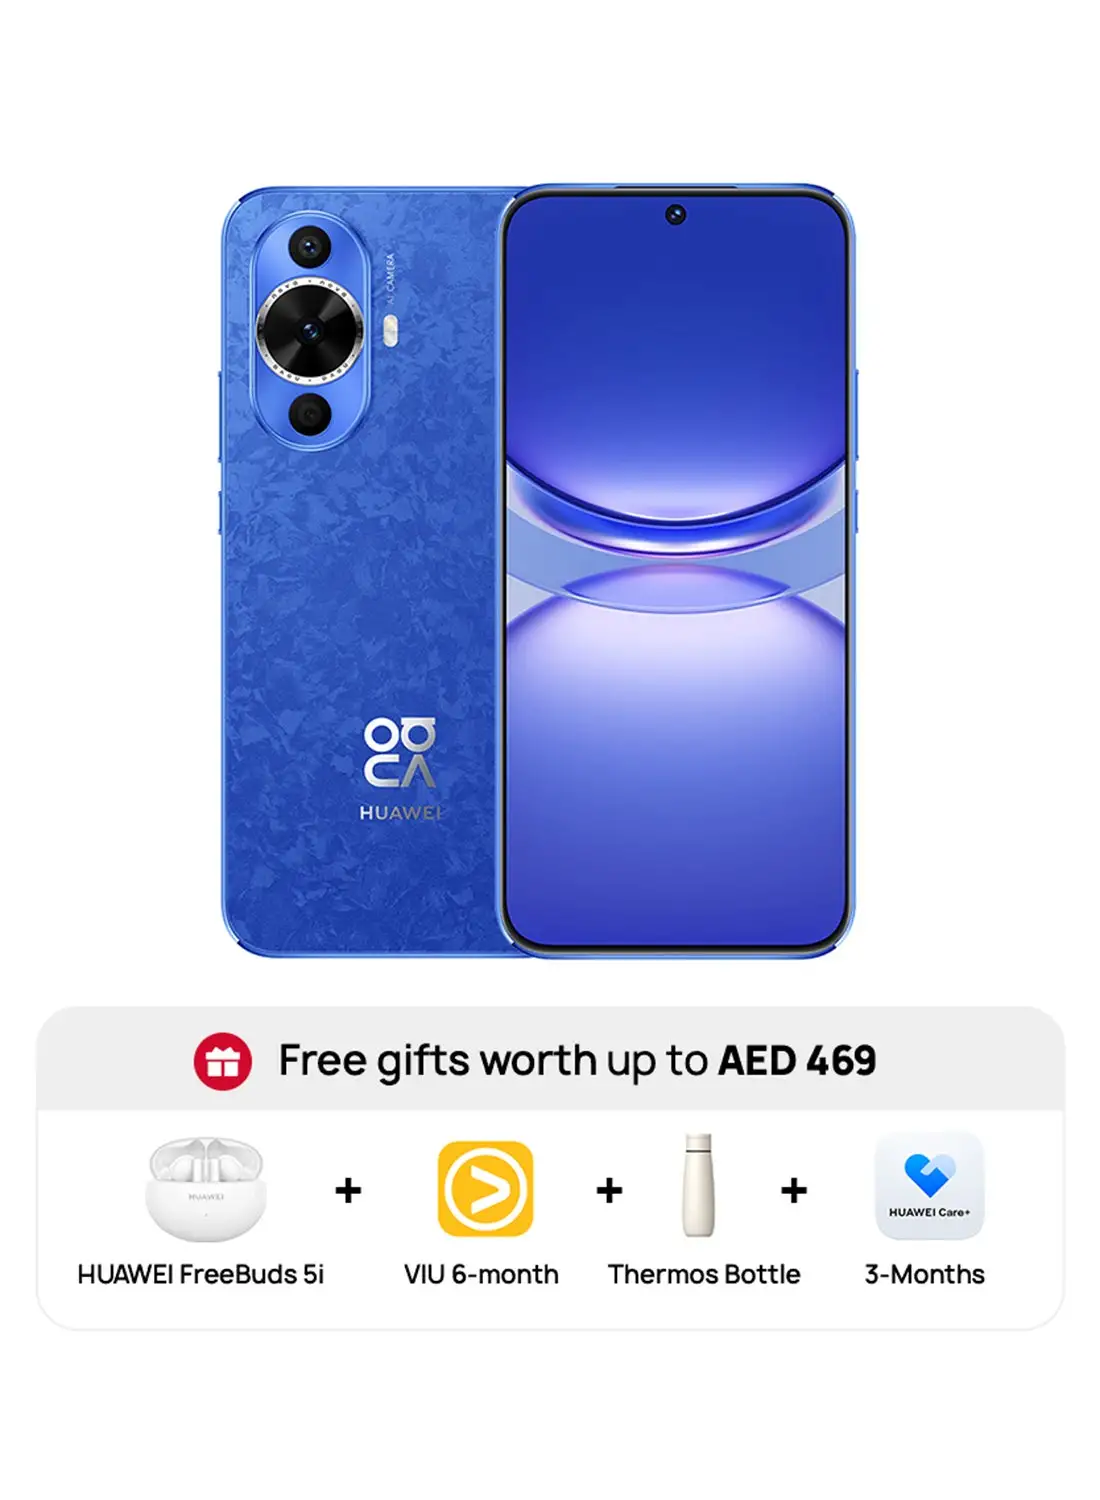 هاتف هواوي نوفا 12S، ثنائي الشريحة، أزرق، 8 جيجابايت رام، 256 جيجابايت، 4G LTE مع FB5i + اشتراك VIU لمدة 6 أشهر + زجاجة ترمس + اشتراك Huawei Care+ لمدة 3 أشهر بقيمة 469 درهمًا إماراتيًا - إصدار الشرق الأوسط